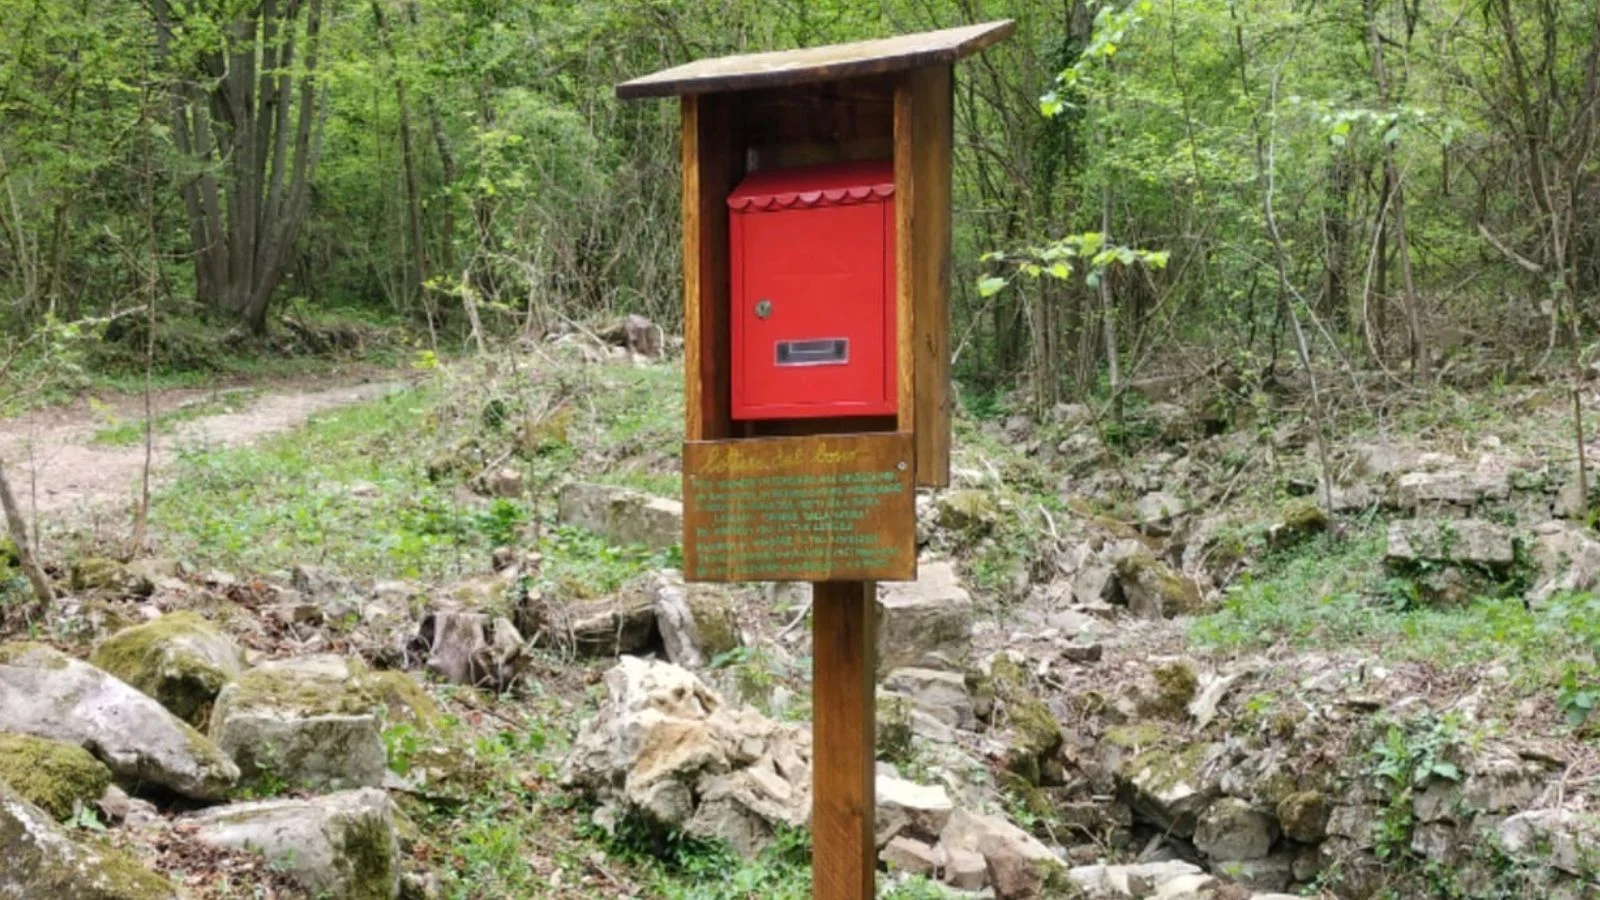 "Lettere dal bosco": installata in Val de Banche la prima cassetta postale dove lasciare racconti, auguri e idee